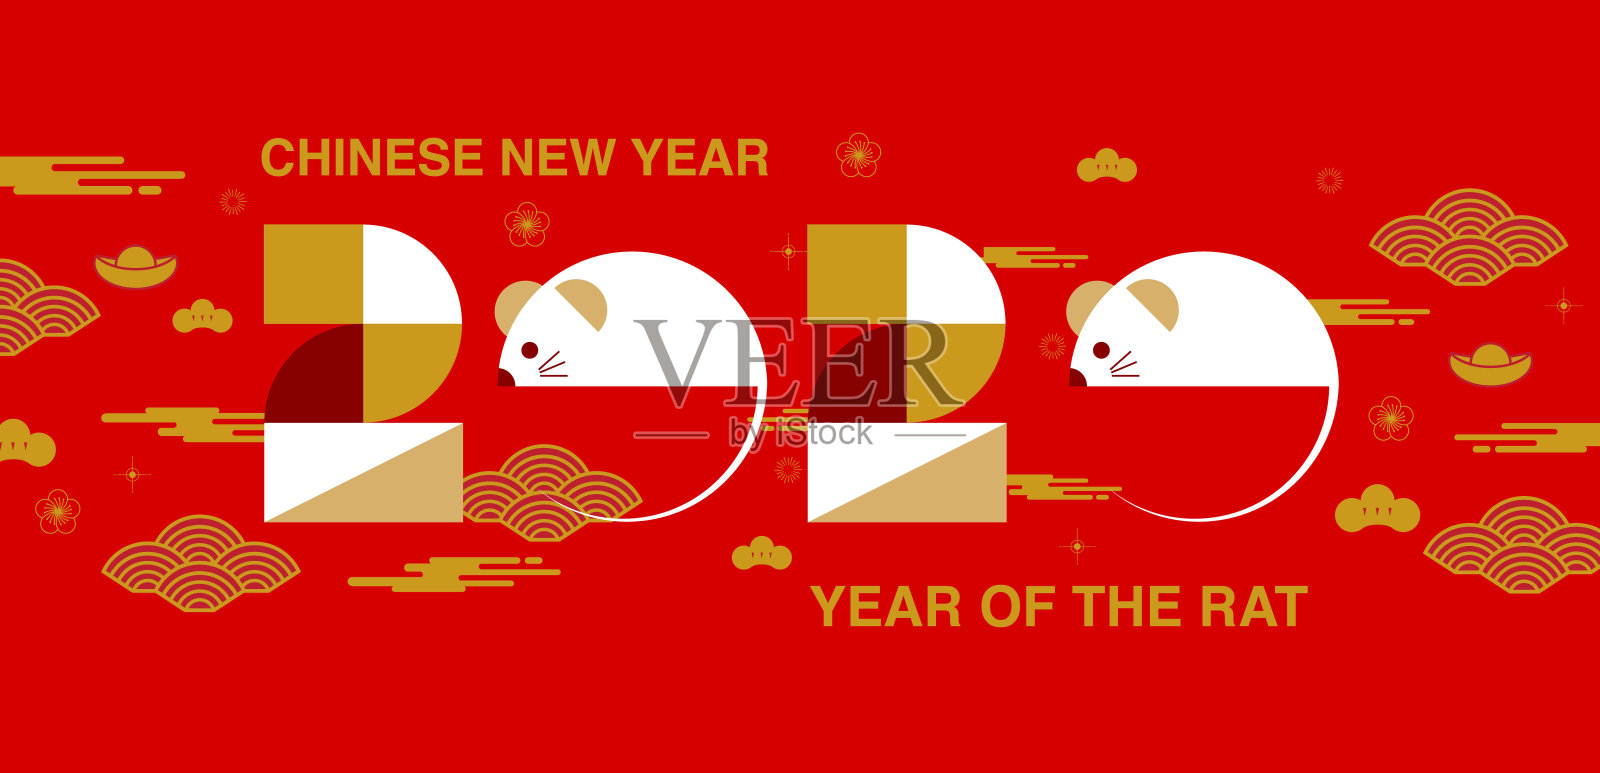 中国新年，2020年，新年祝福，鼠年，现代设计，丰富多彩，
几何插画图片素材